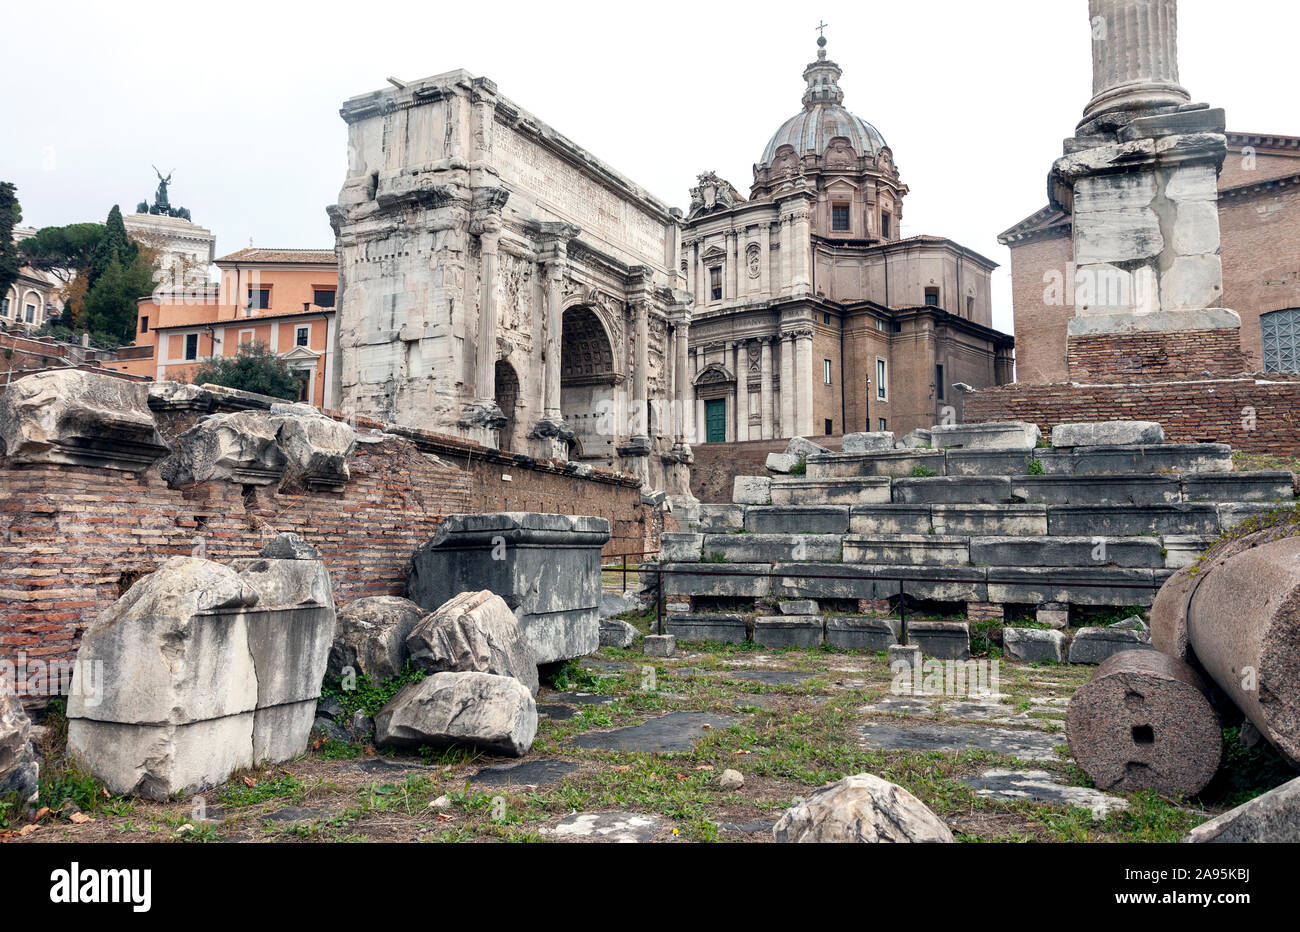 Ruines de l'ancien forum romain, historique l'architecture ancienne à Rome, Italie Banque D'Images